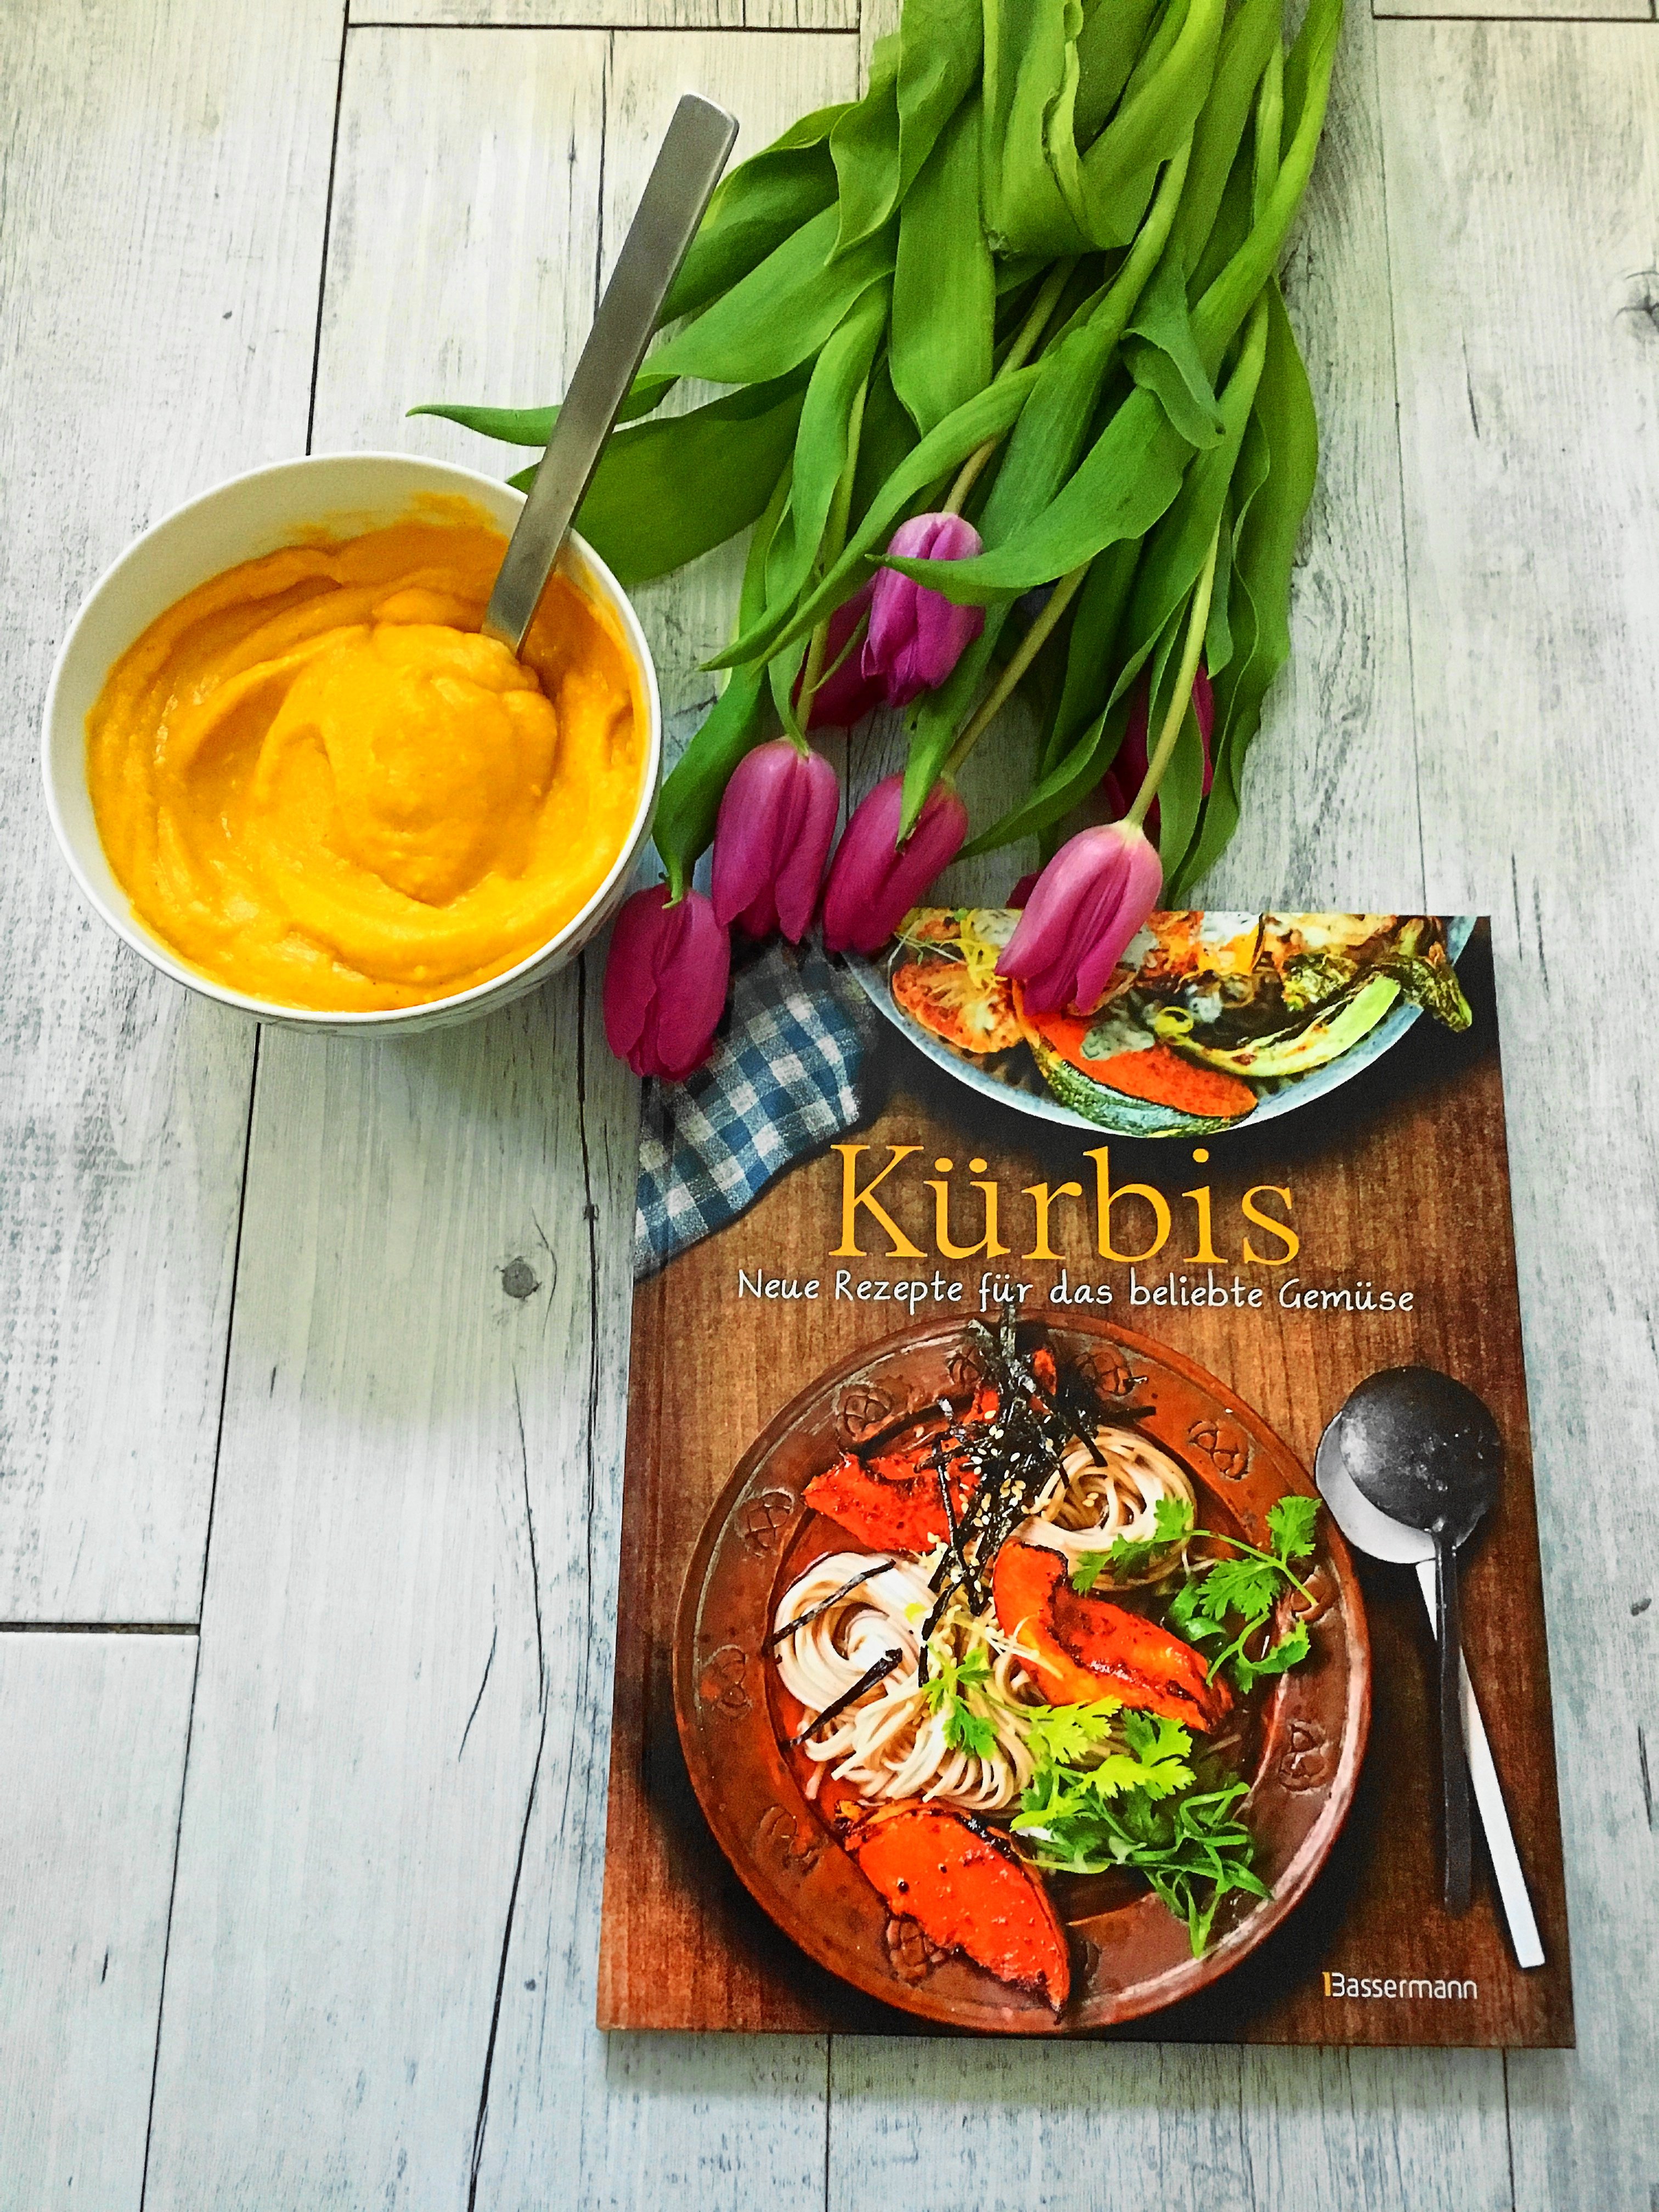 Heute gebe ich euch auf dem Blog zwei tolle Kochbuch-Tipps, koche zwei vegane Rezepte und stelle das Kochbuch Kürbis und Molly`s Kitchen von Molly Yeh vor